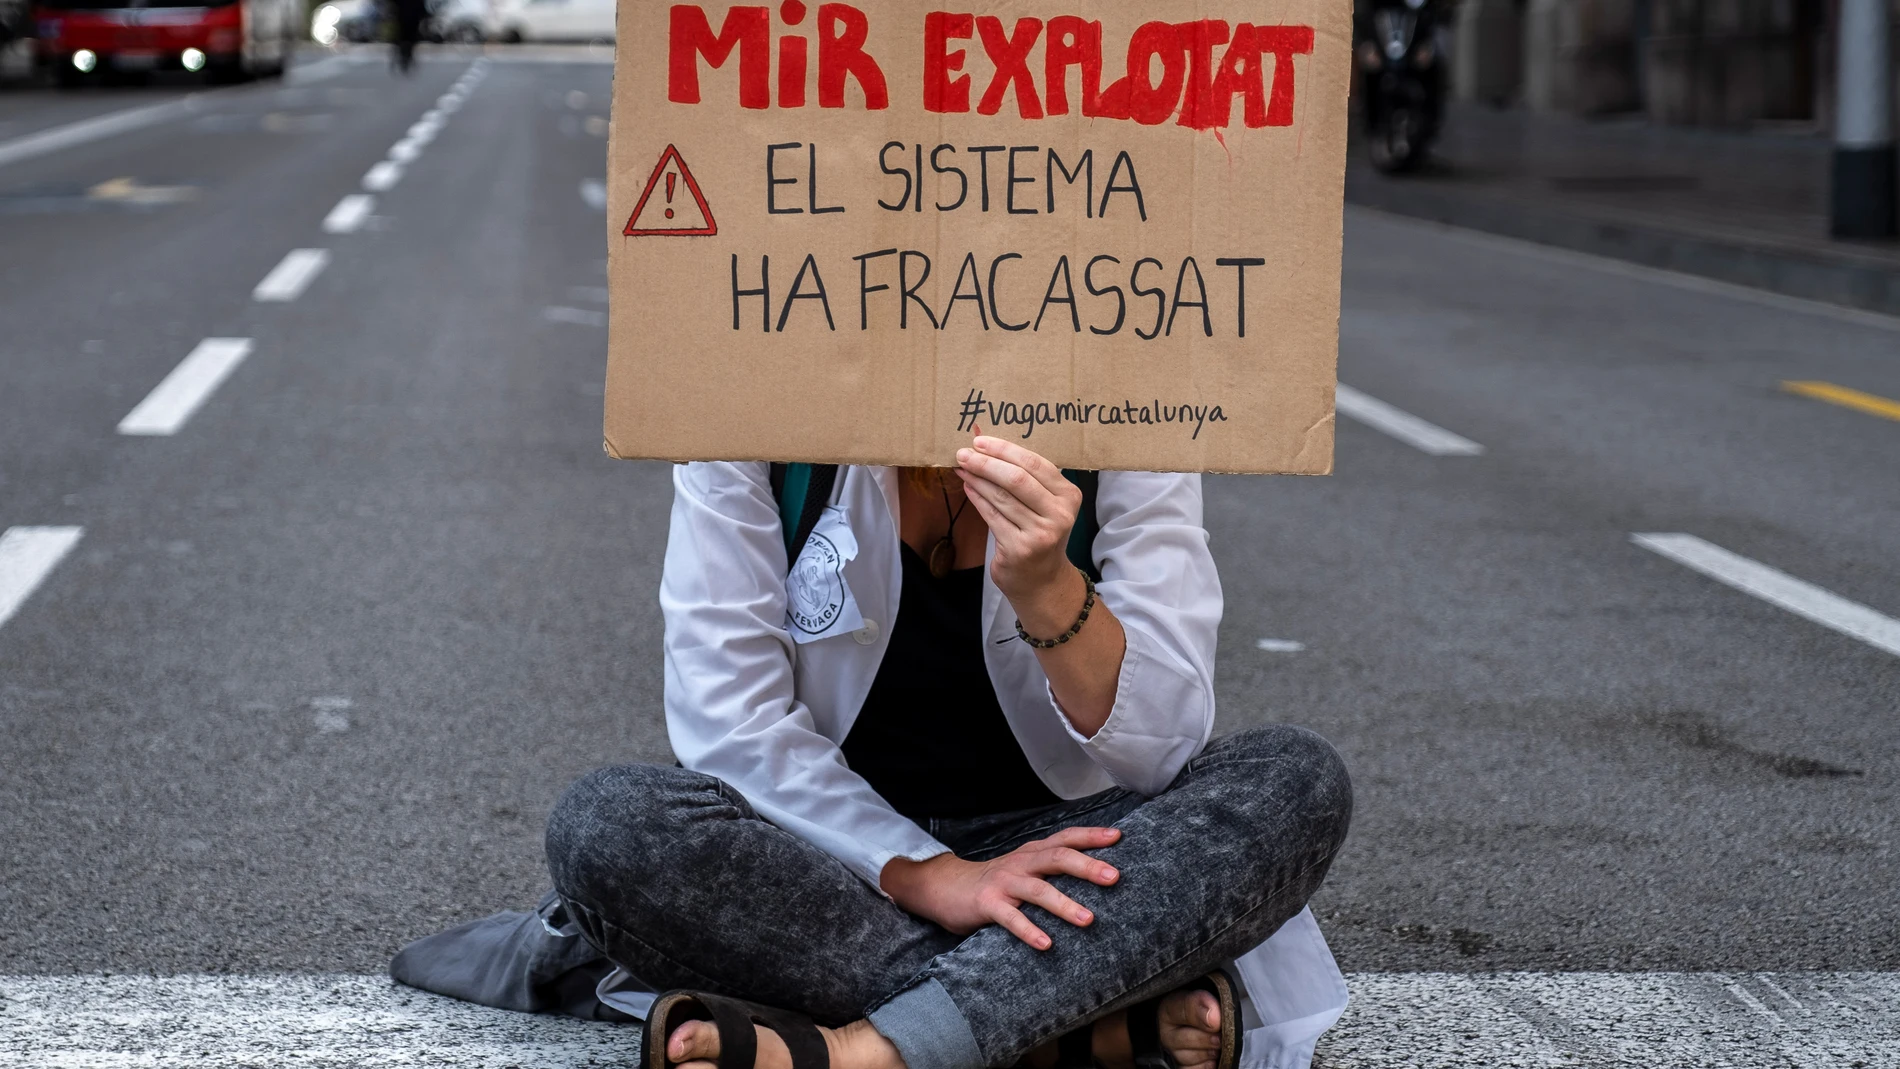 Los MIR no llegan a ningún acuerdo con el ICS y las patronales y alargan la huelga cinco días la próxima semana. Paco Freire/SOPA Images via ZUMA Wire/dpa22/09/2020 ONLY FOR USE IN SPAIN